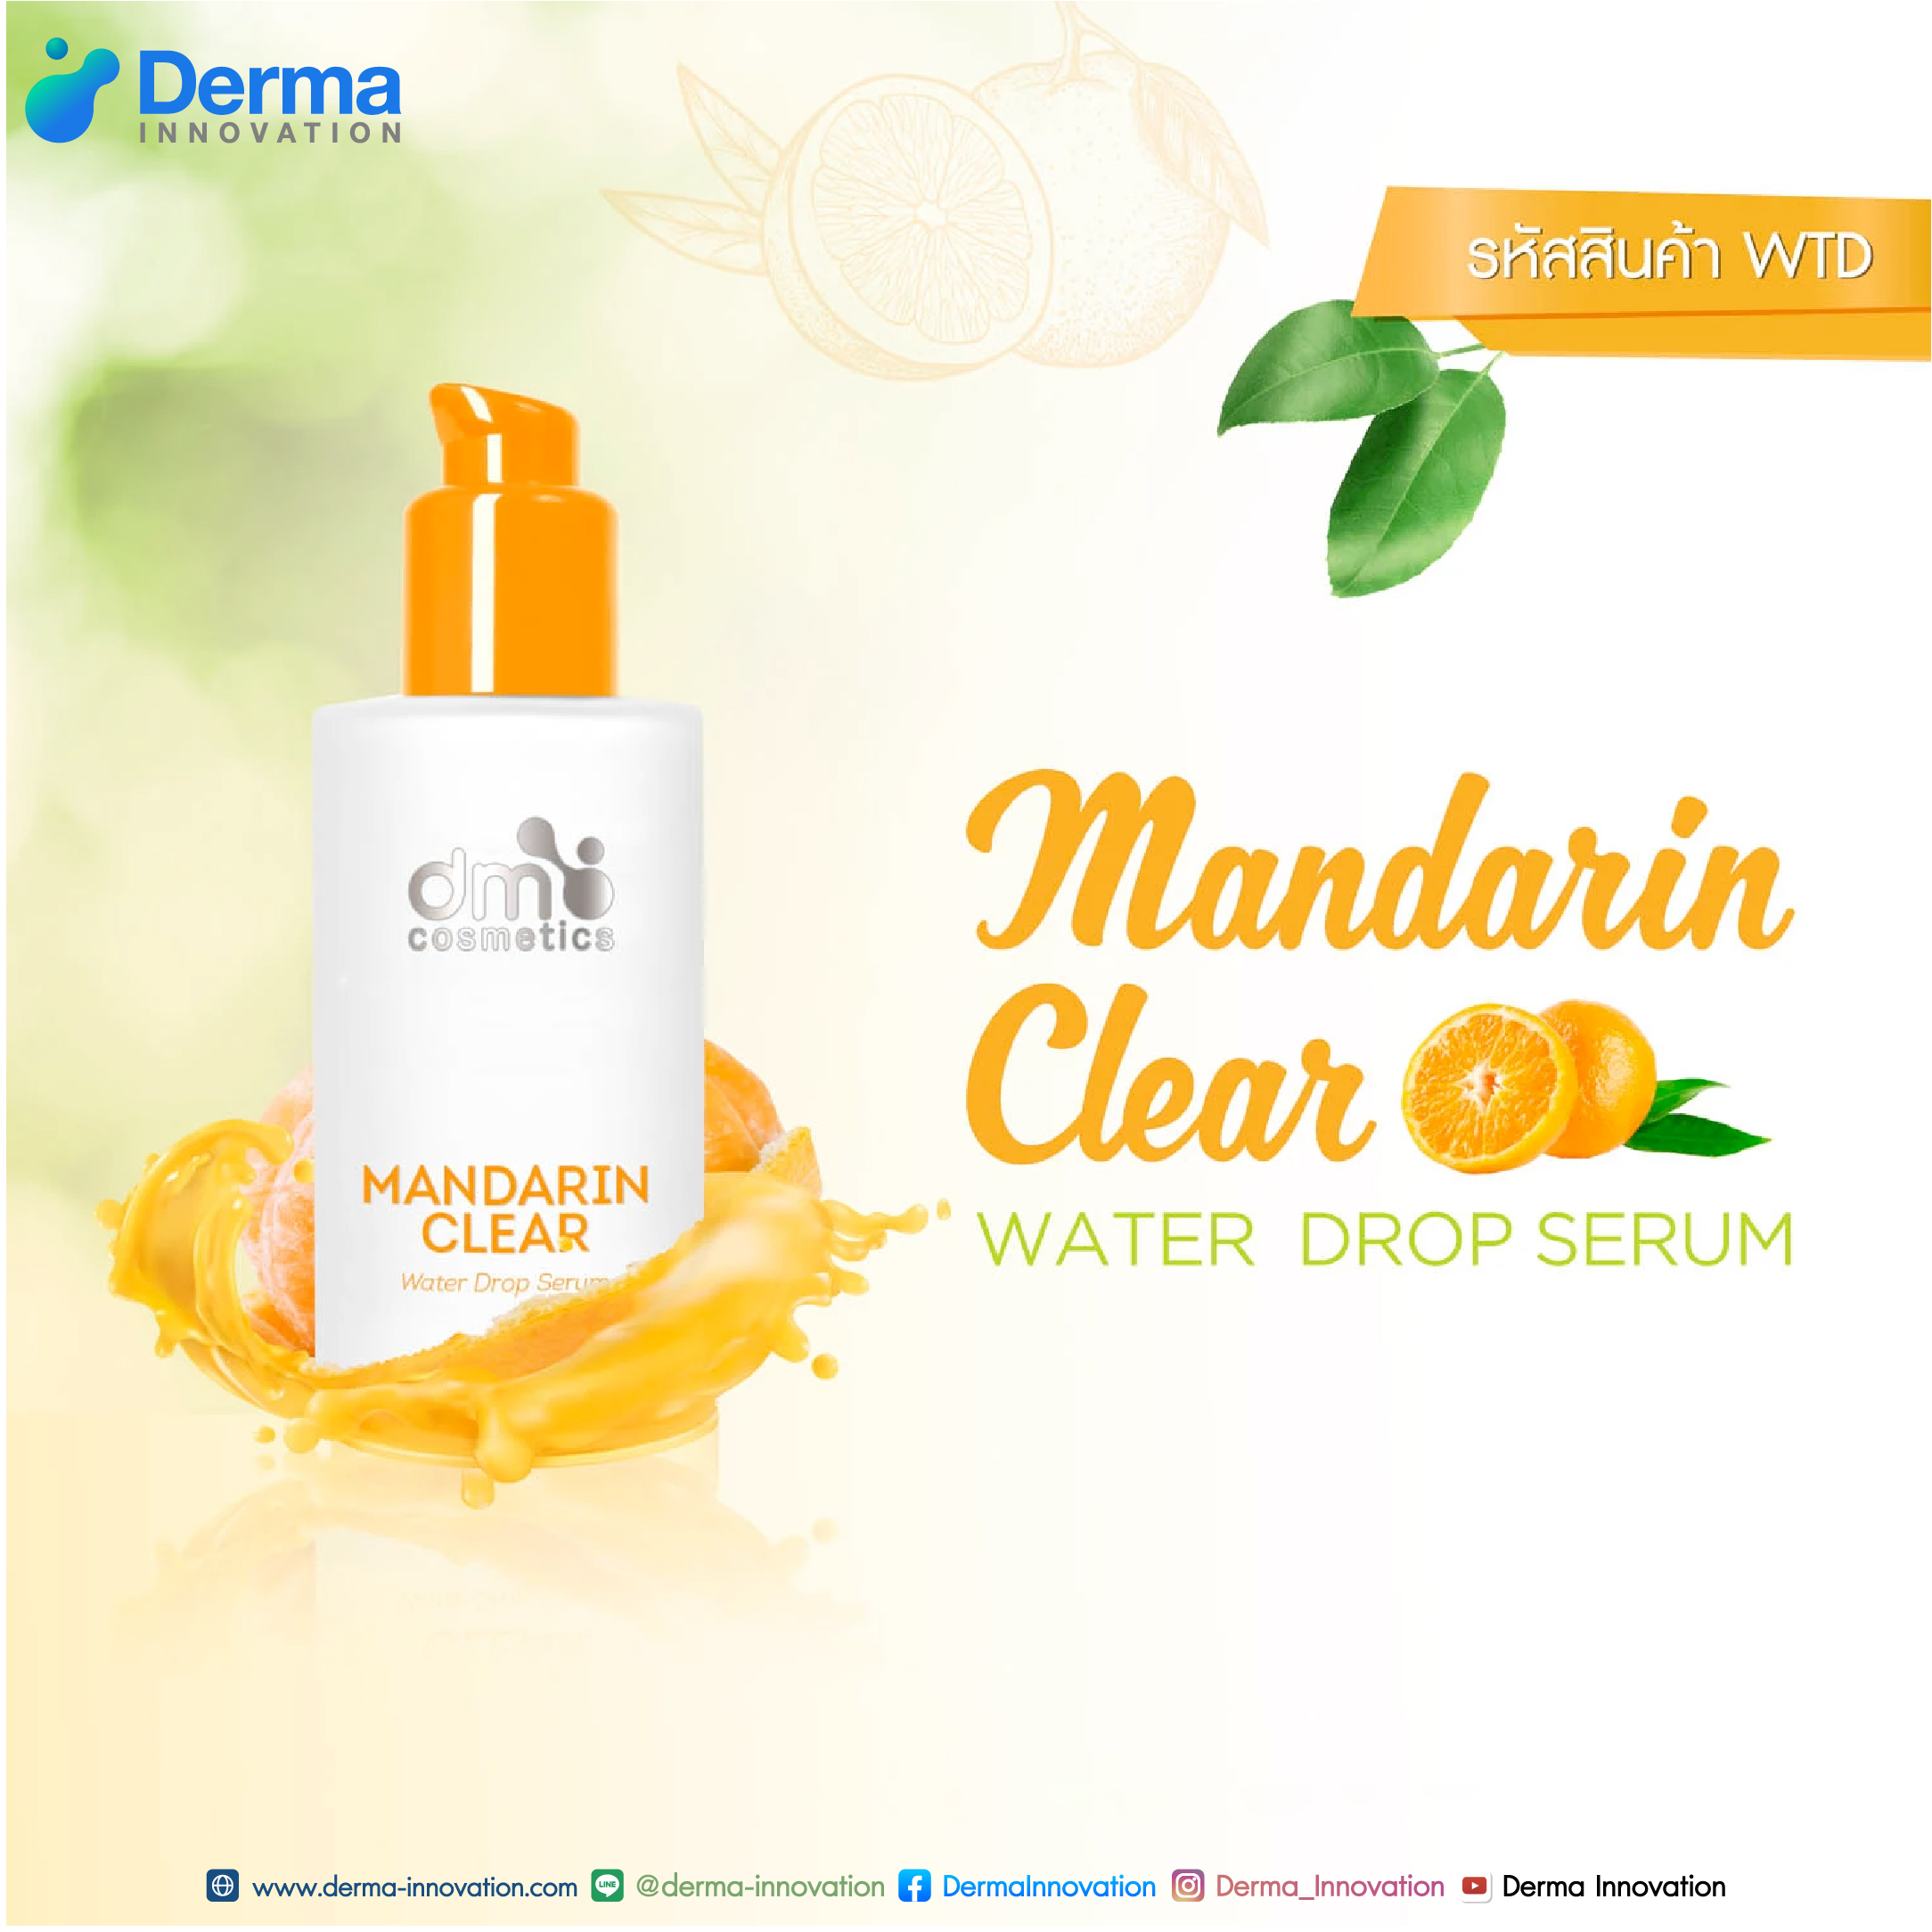 Mandarin Clear Water Drop Serum (WTD)